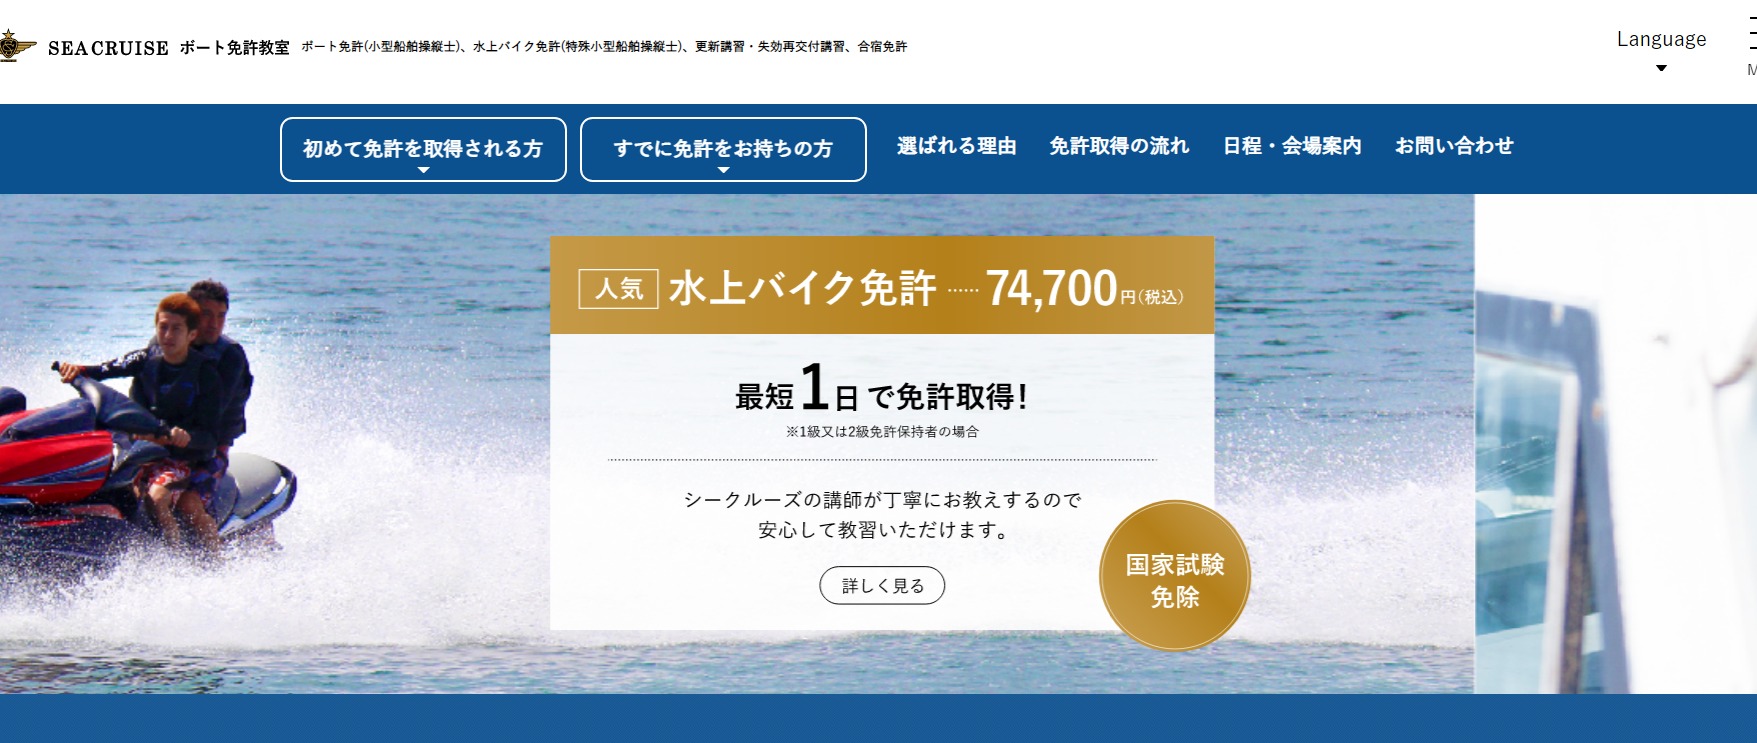 熊本県 シークルーズで小型船舶免許を取得